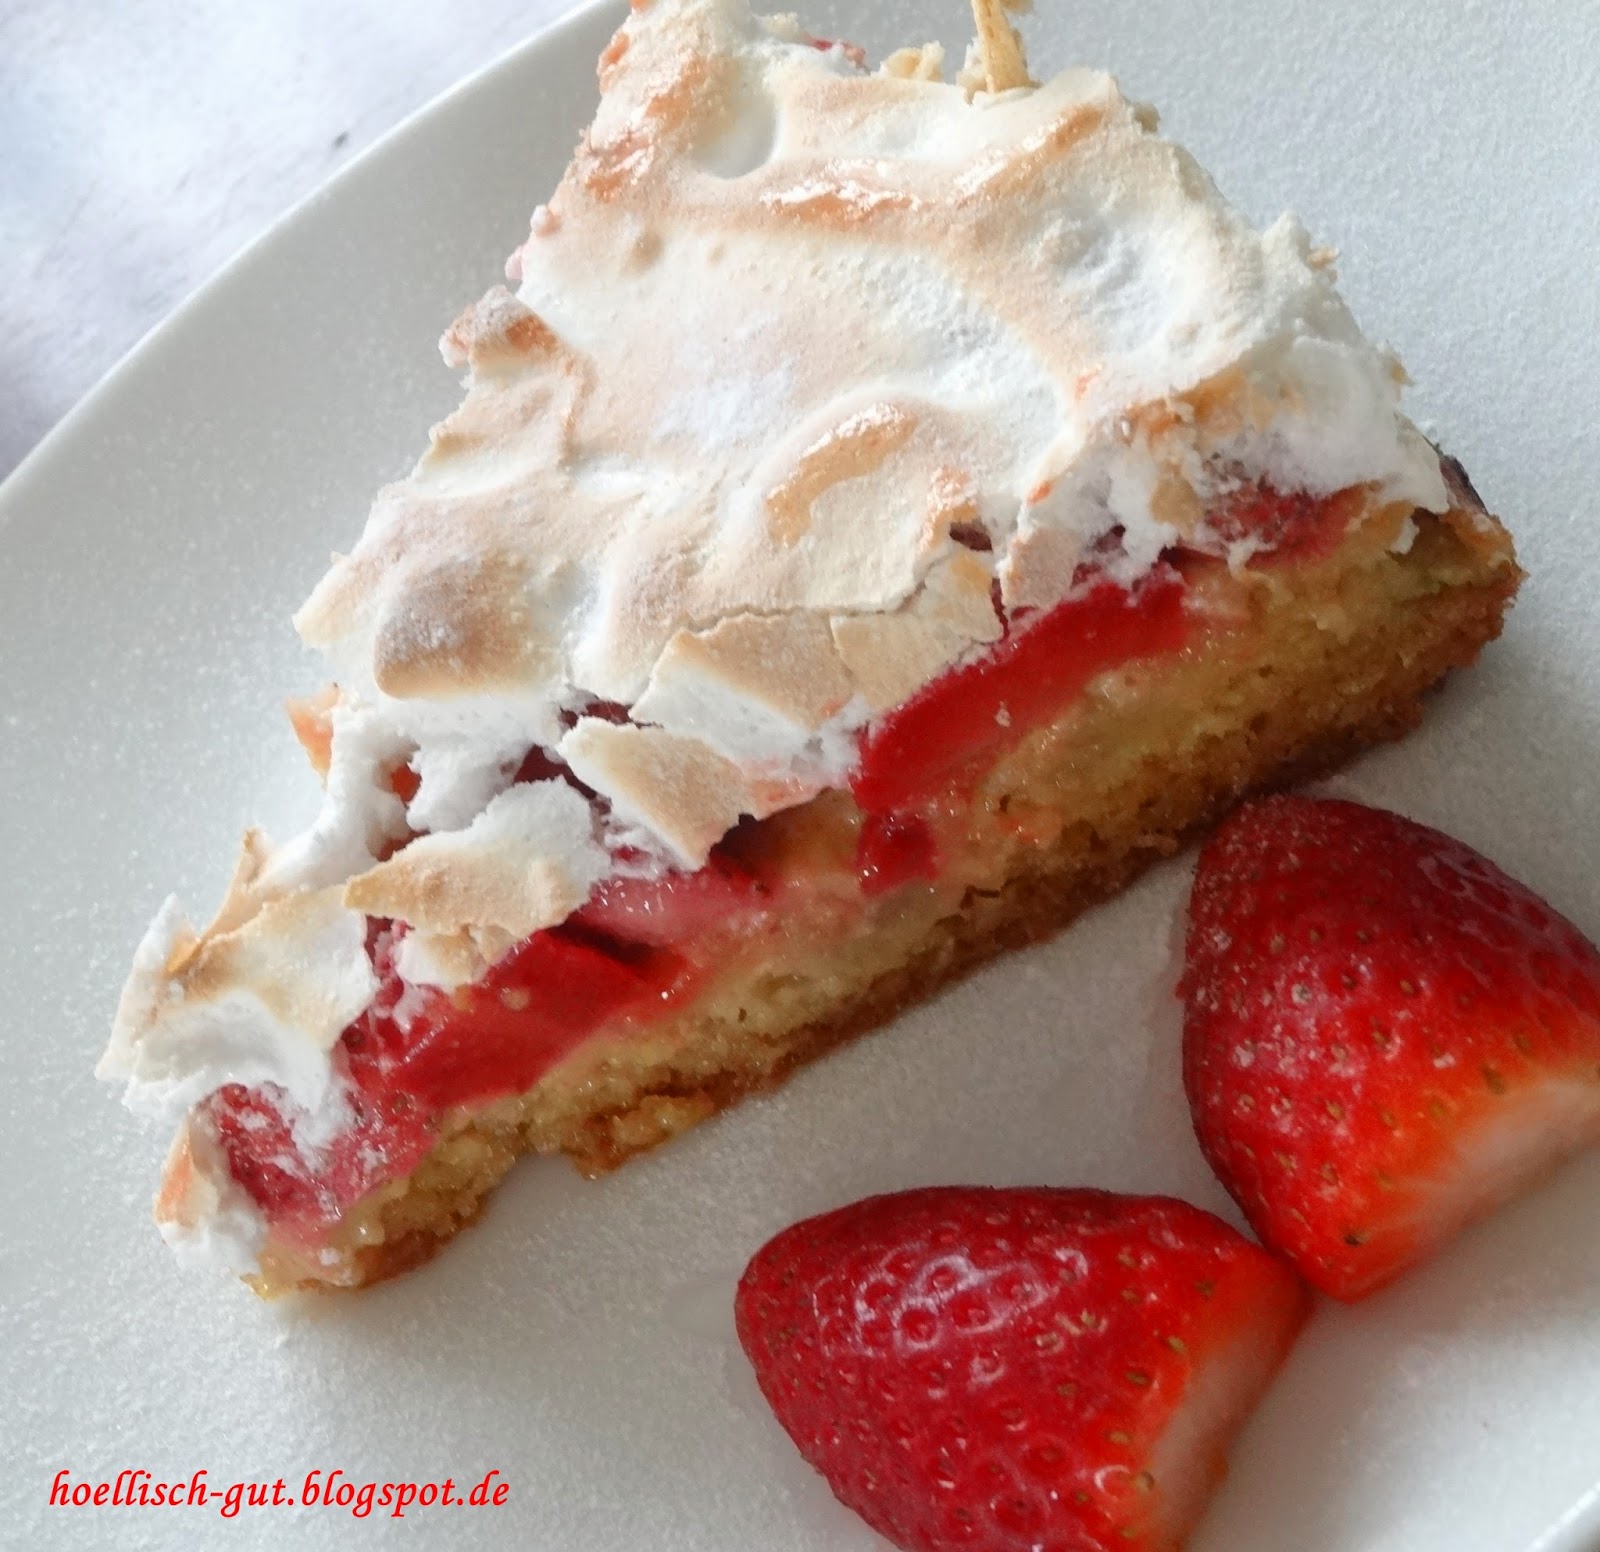 A New Day: Erdbeer-Rhabarber Kuchen mit Baiserhaube, zum Muttertag